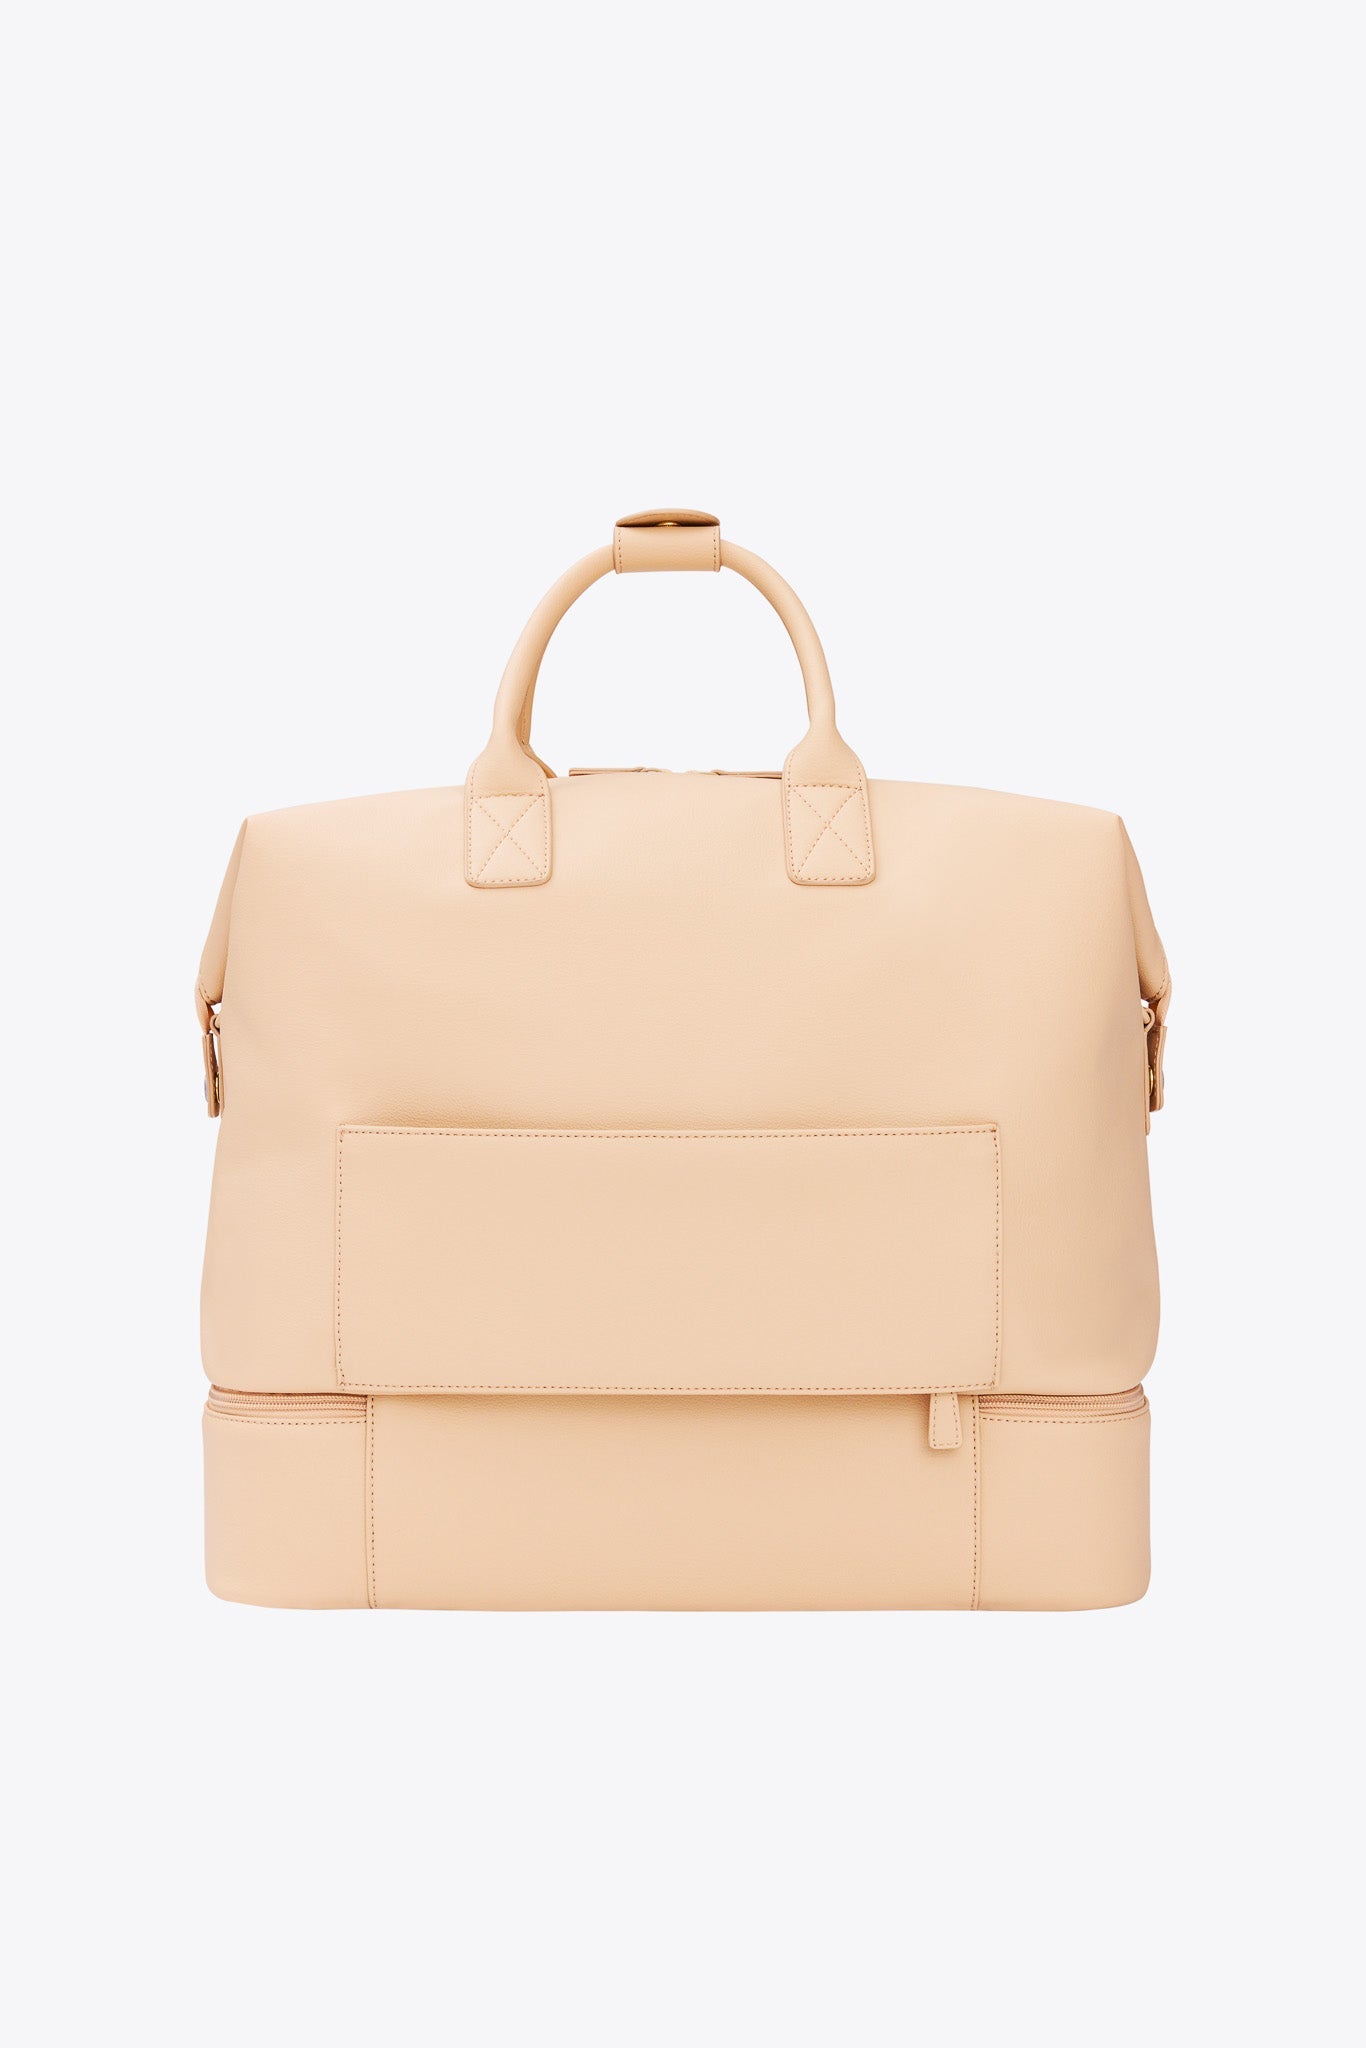 Chanel Premium Quality Tote Bag - Rs.699